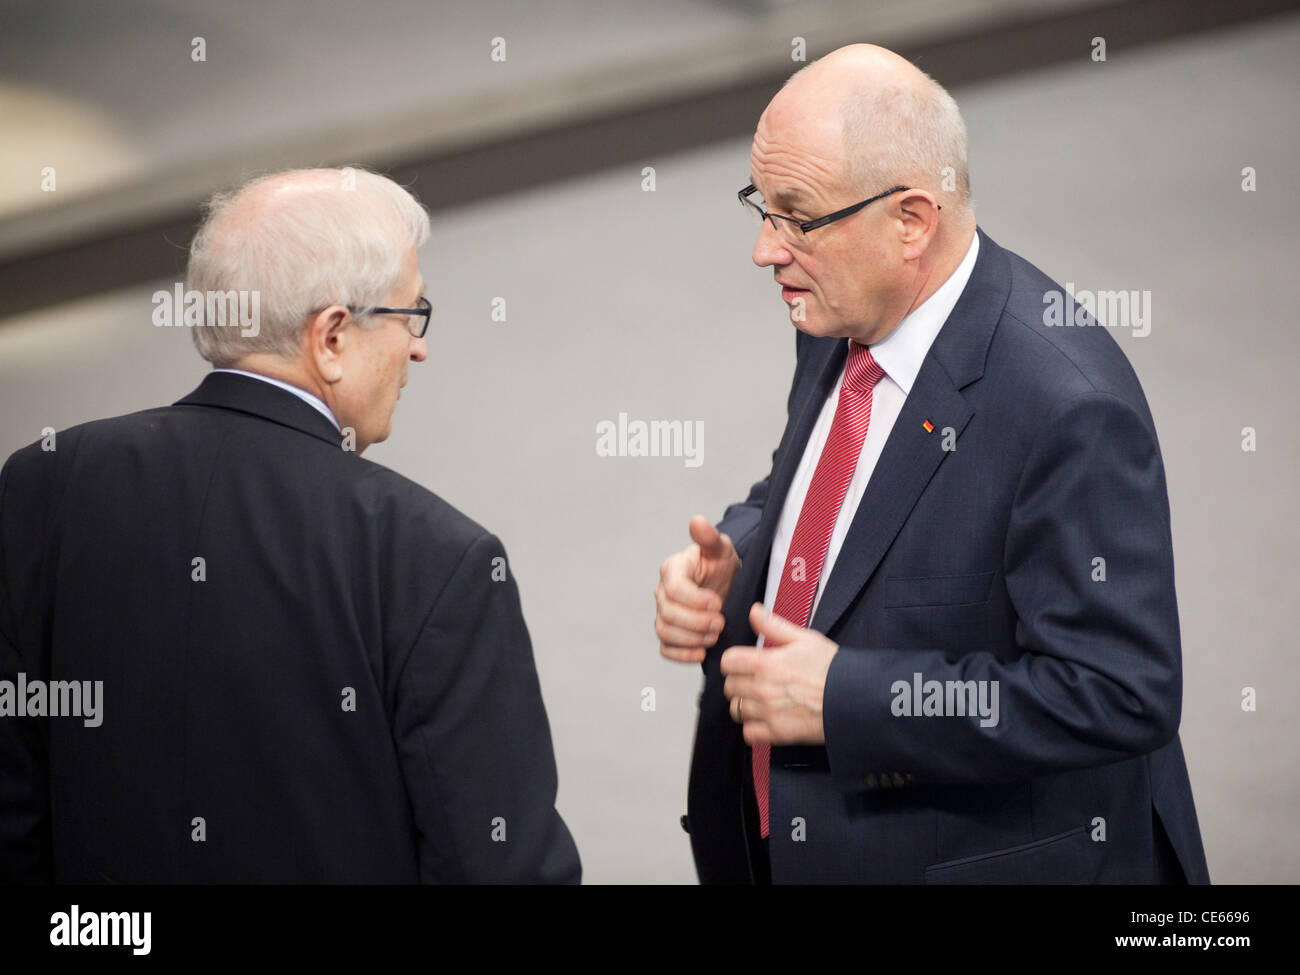 Rainer Bruederle, FDP Fraktionsvorsitzender und Volker Kauder, CDU/CSU Fraktionsvorsitzender, im Plenum des Deutschen Bundestage Stock Photo